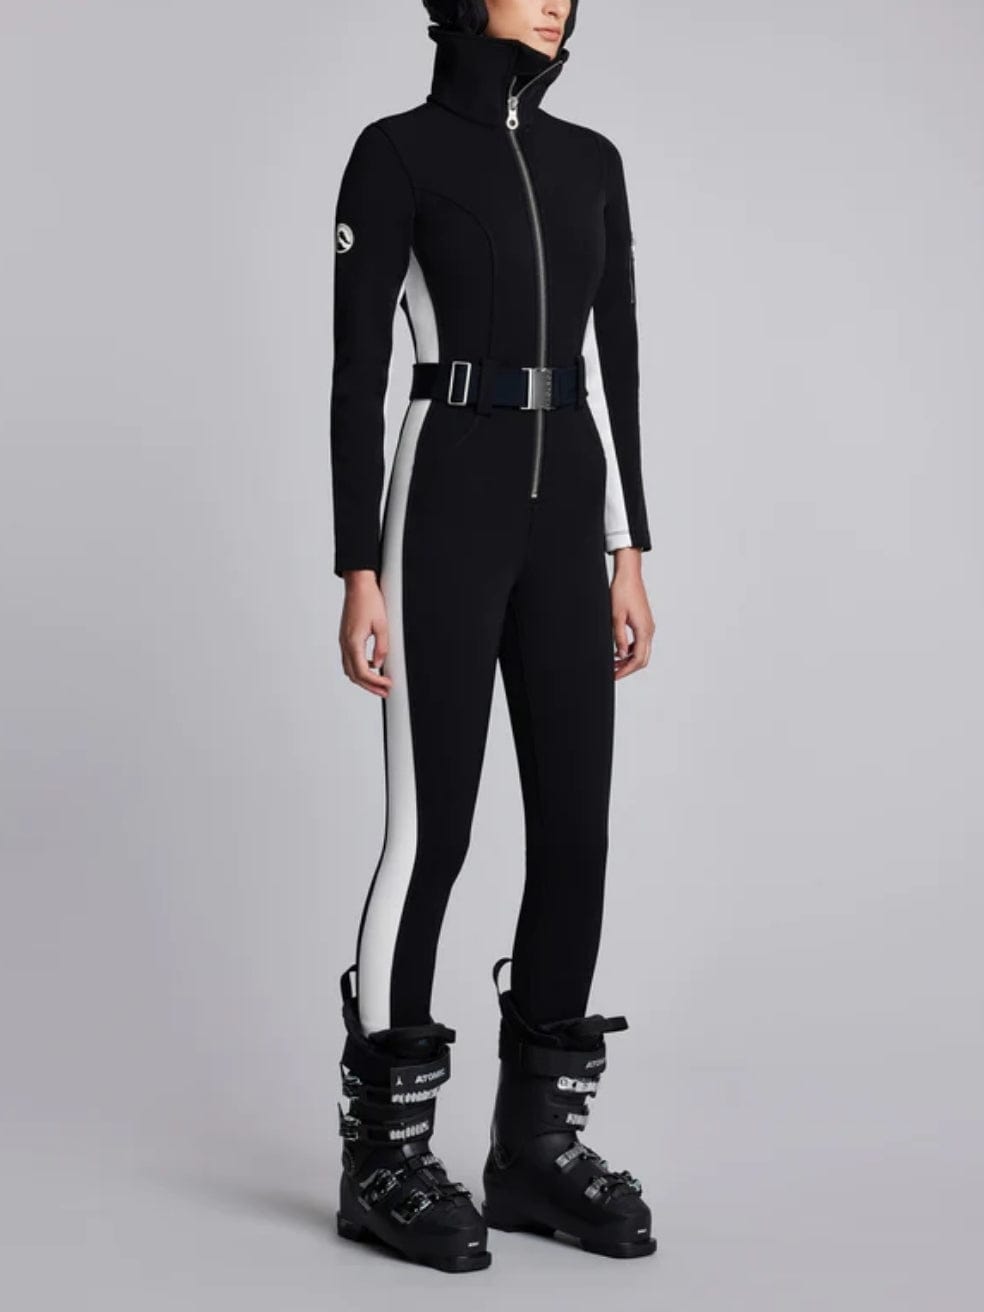 Cordova Ski Suit